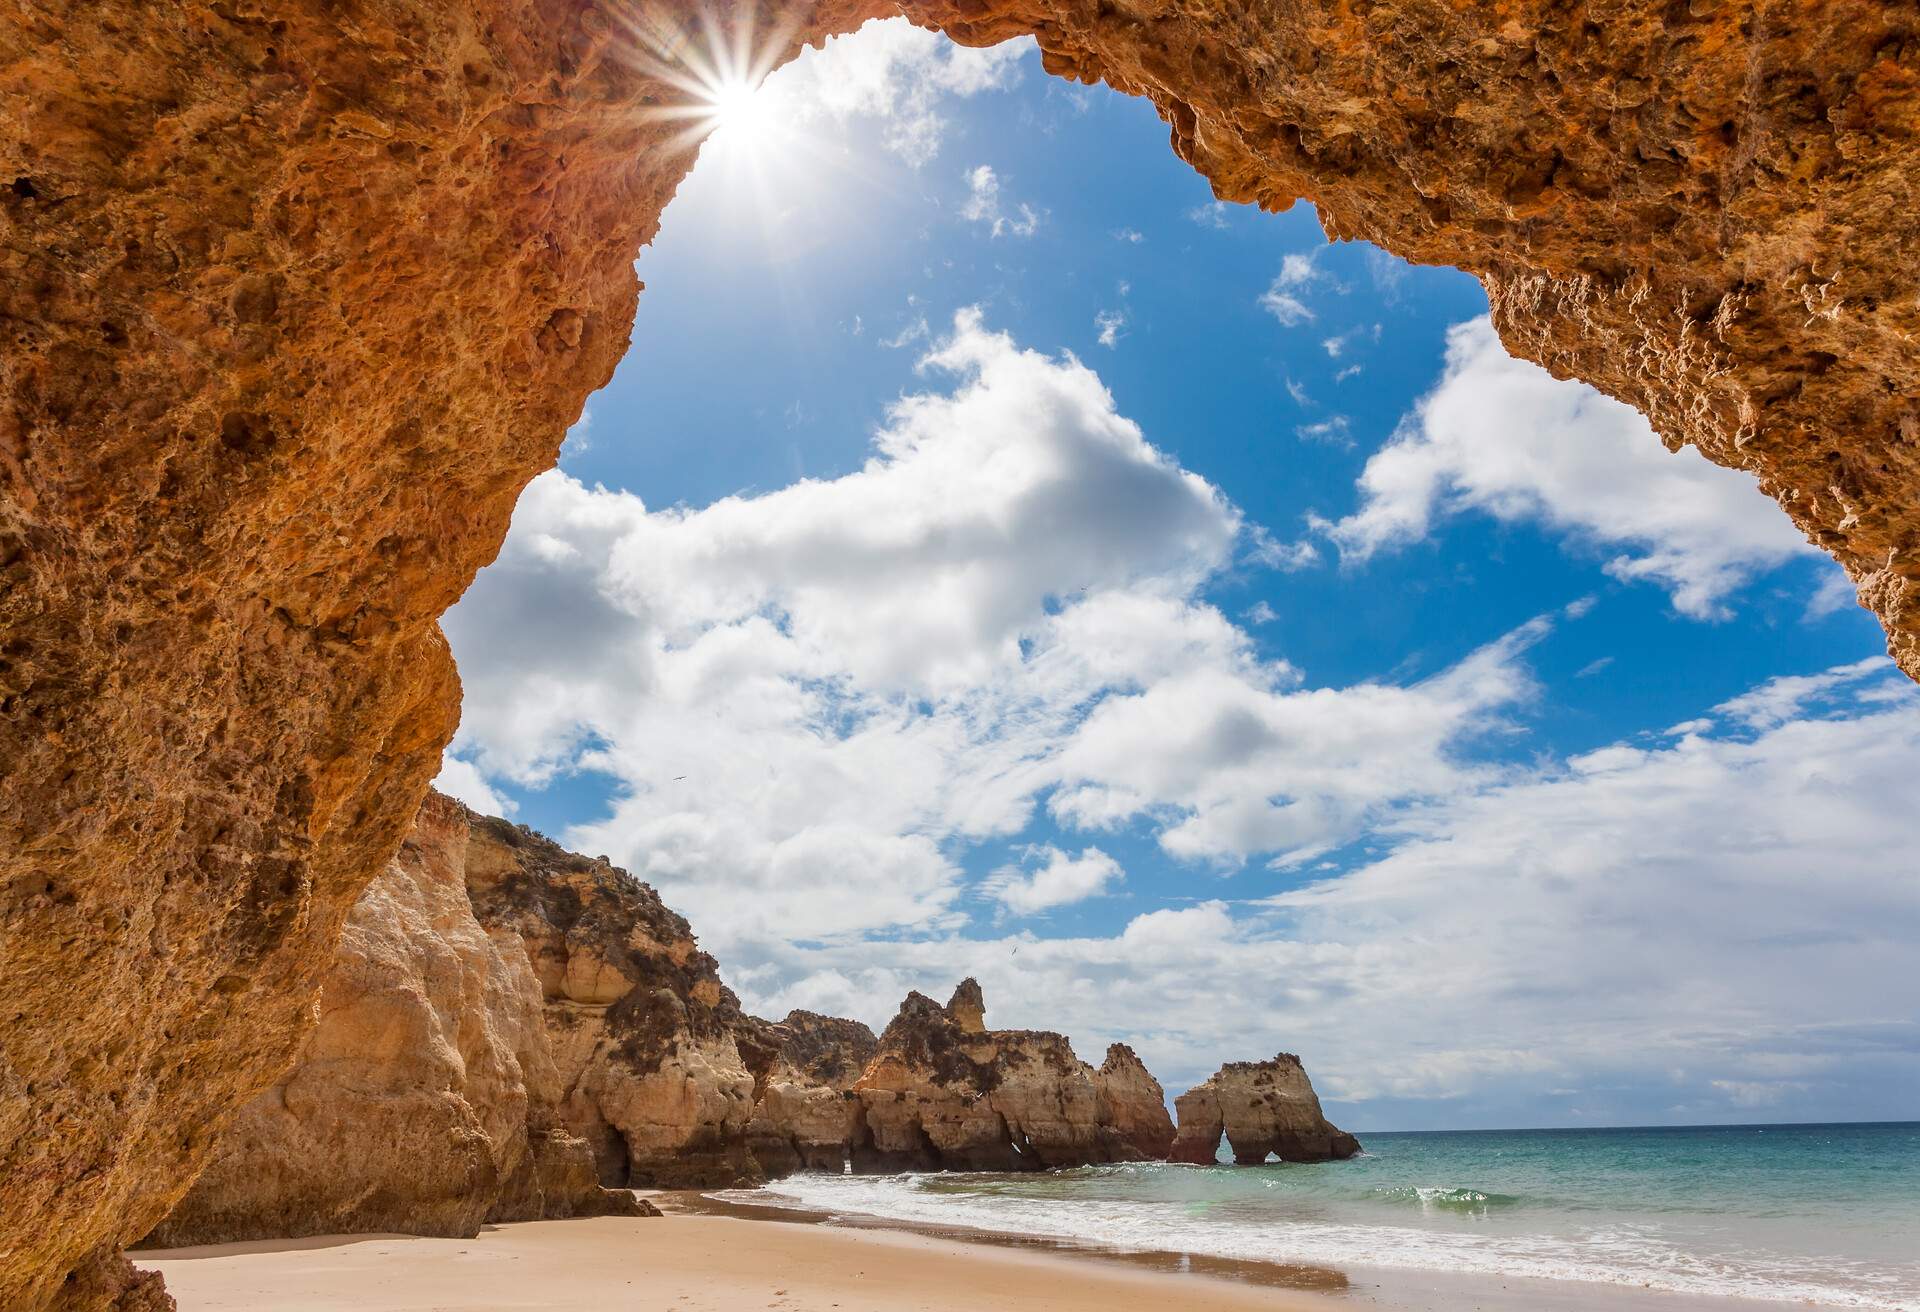 Praia dos Tres Irmaos beach, Alvor, Algarve, Portugal, Europe